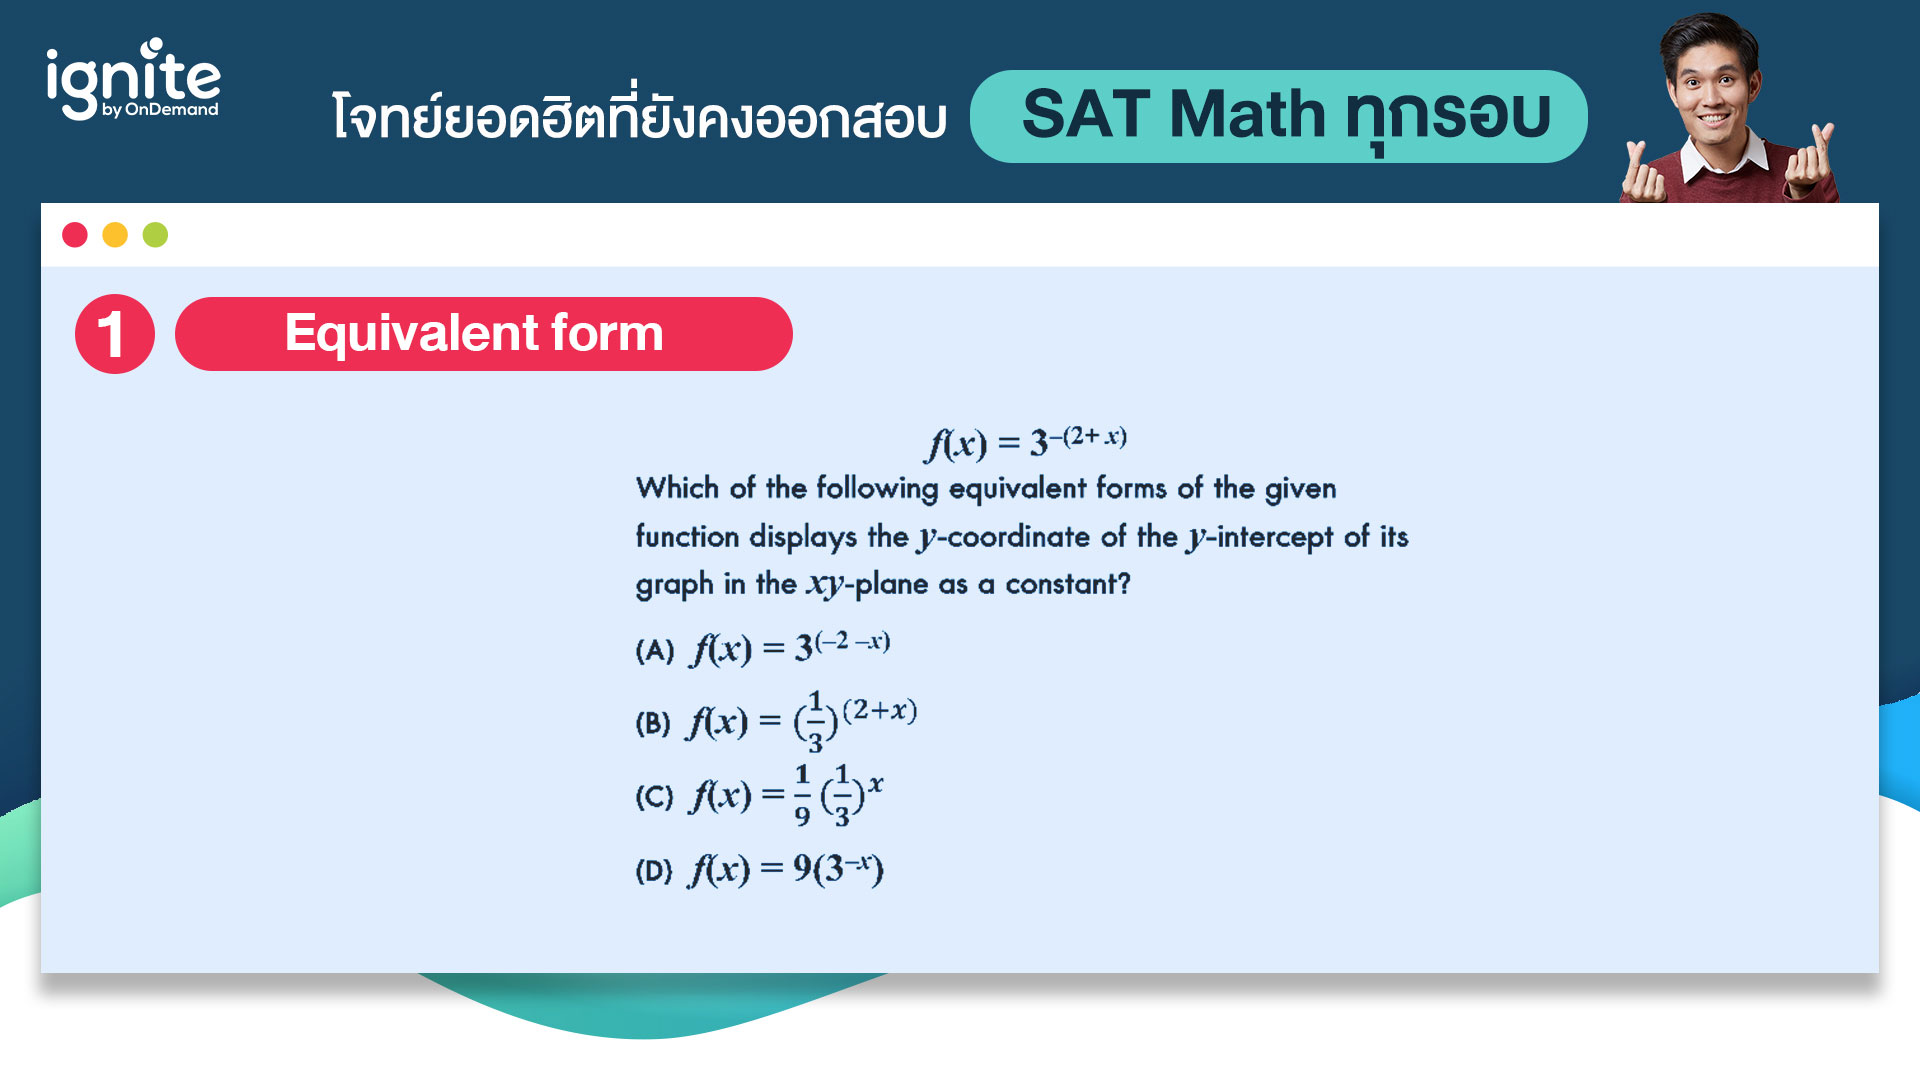 ข้อสอบ - SAT Math - ที่ออกสอบทุกรอบ - Bigcover2